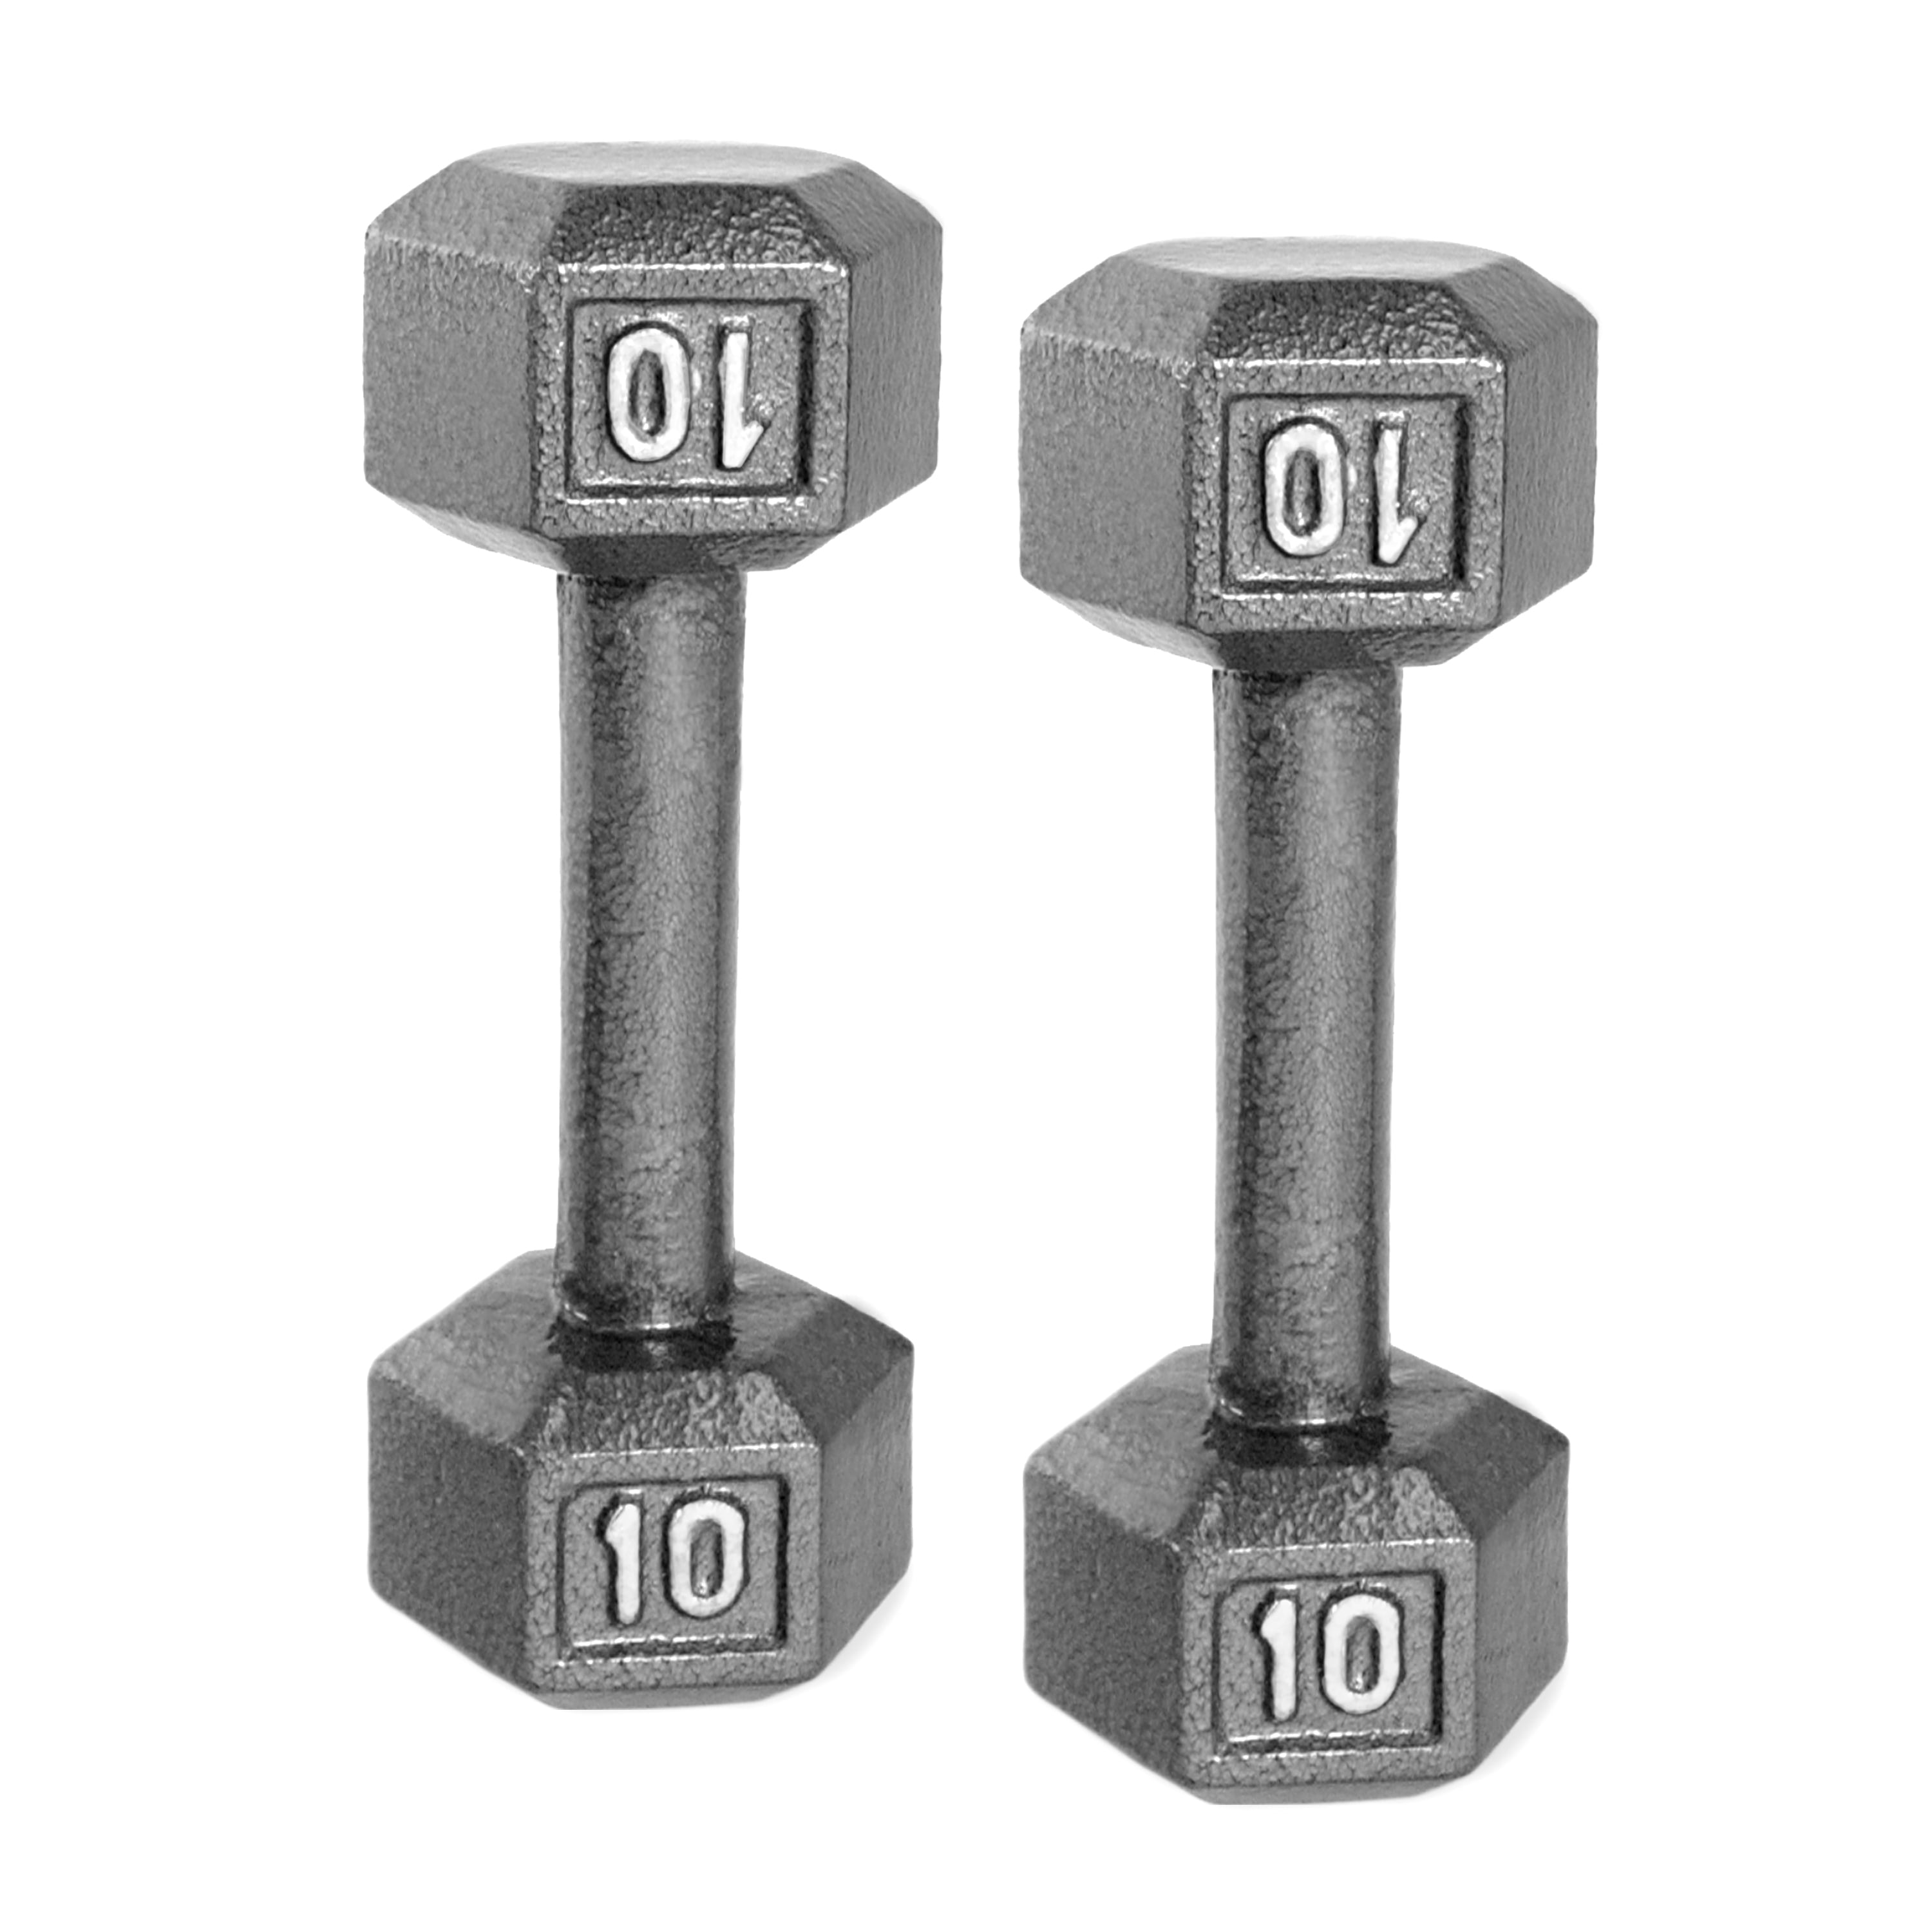 10lb weights walmart